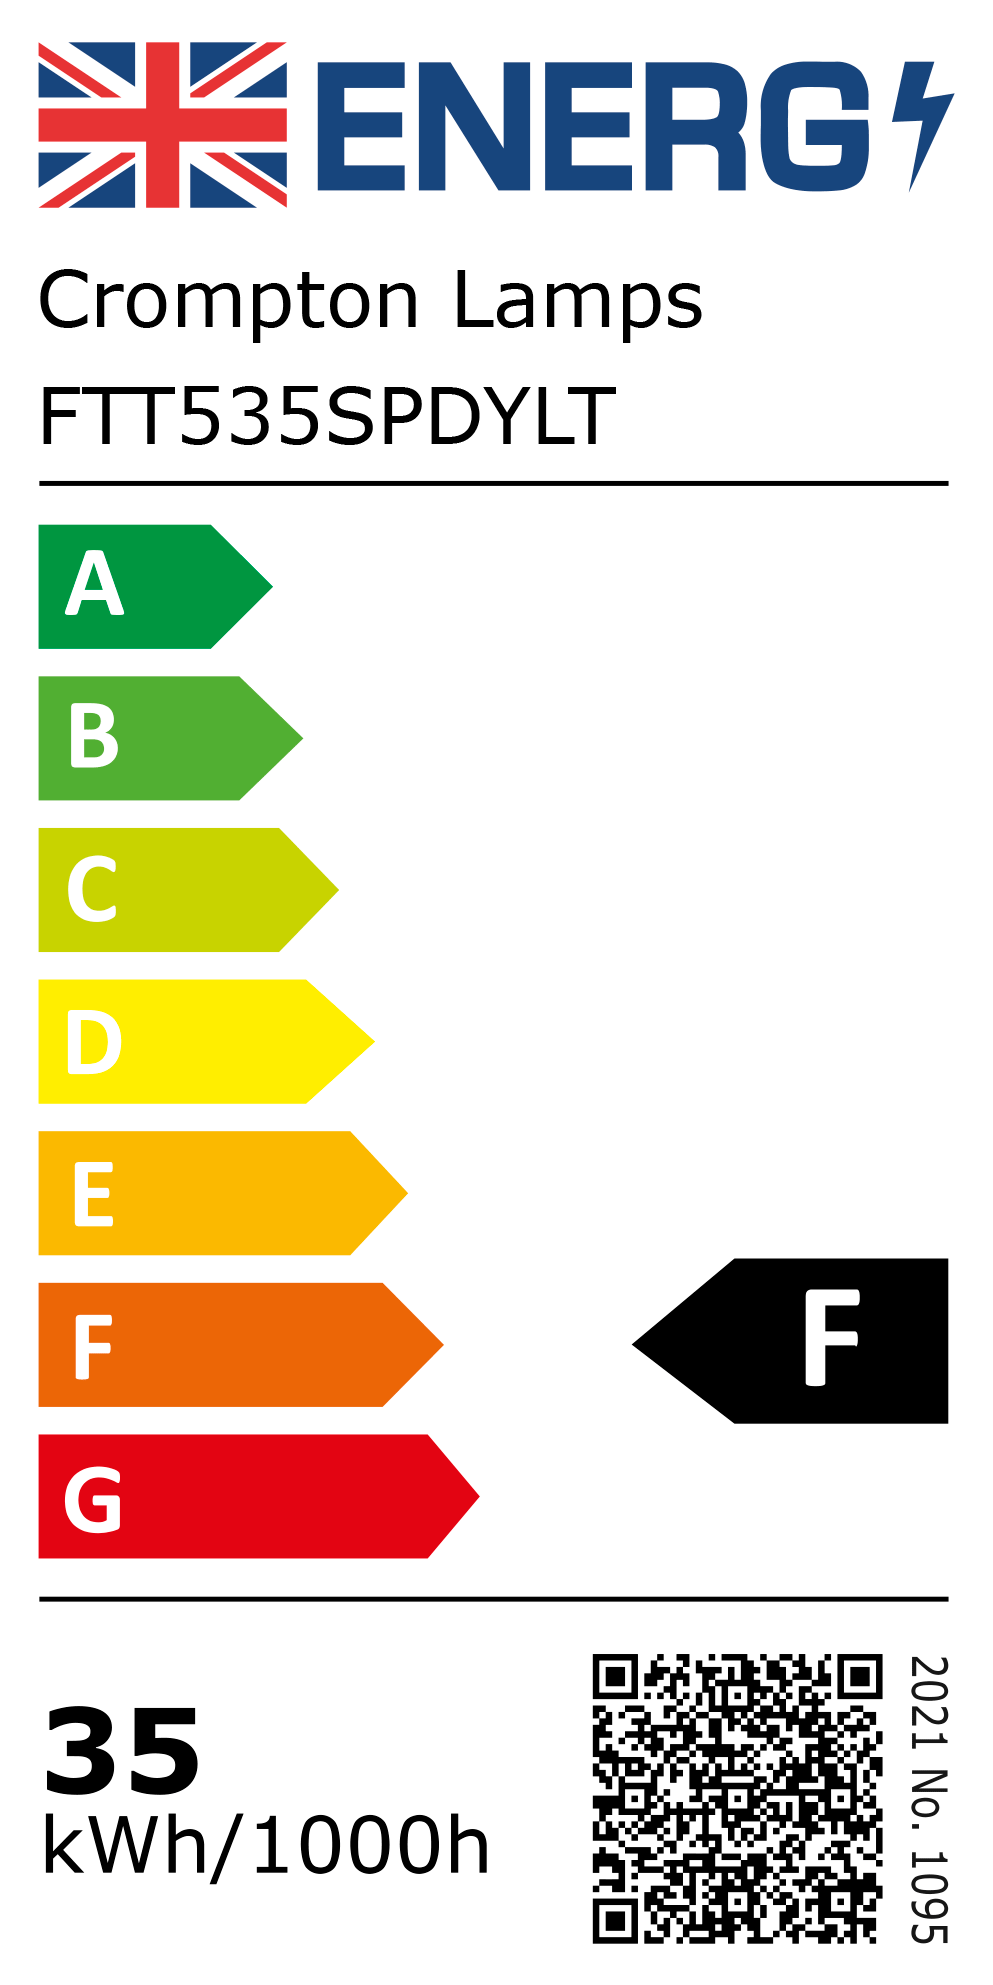 New 2021 Energy Rating Label: Stock Code FTT535SPDYLT